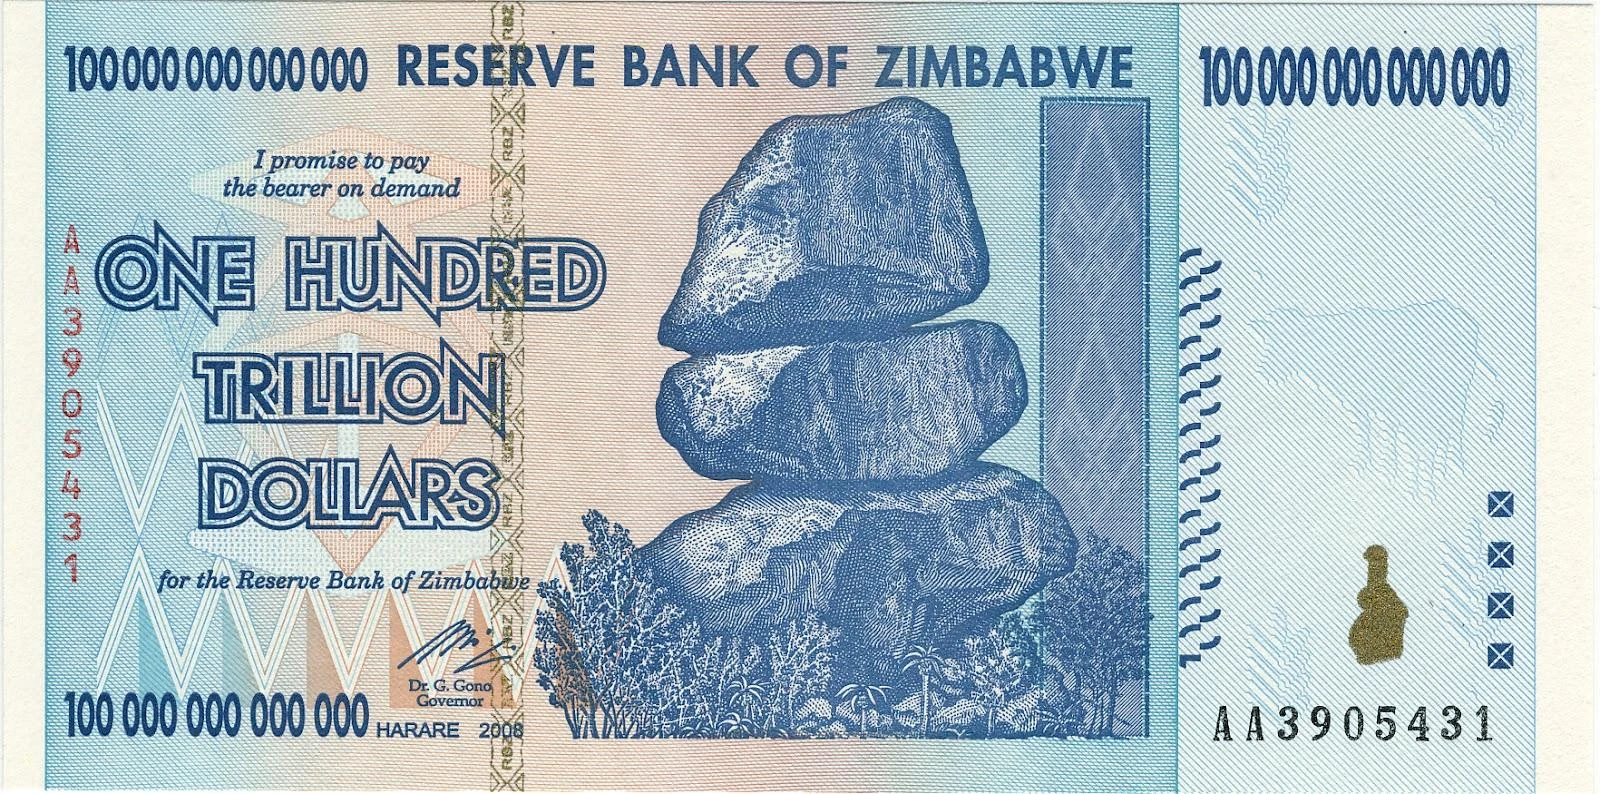 Zimbabwe one hundred ttrillins dollars!